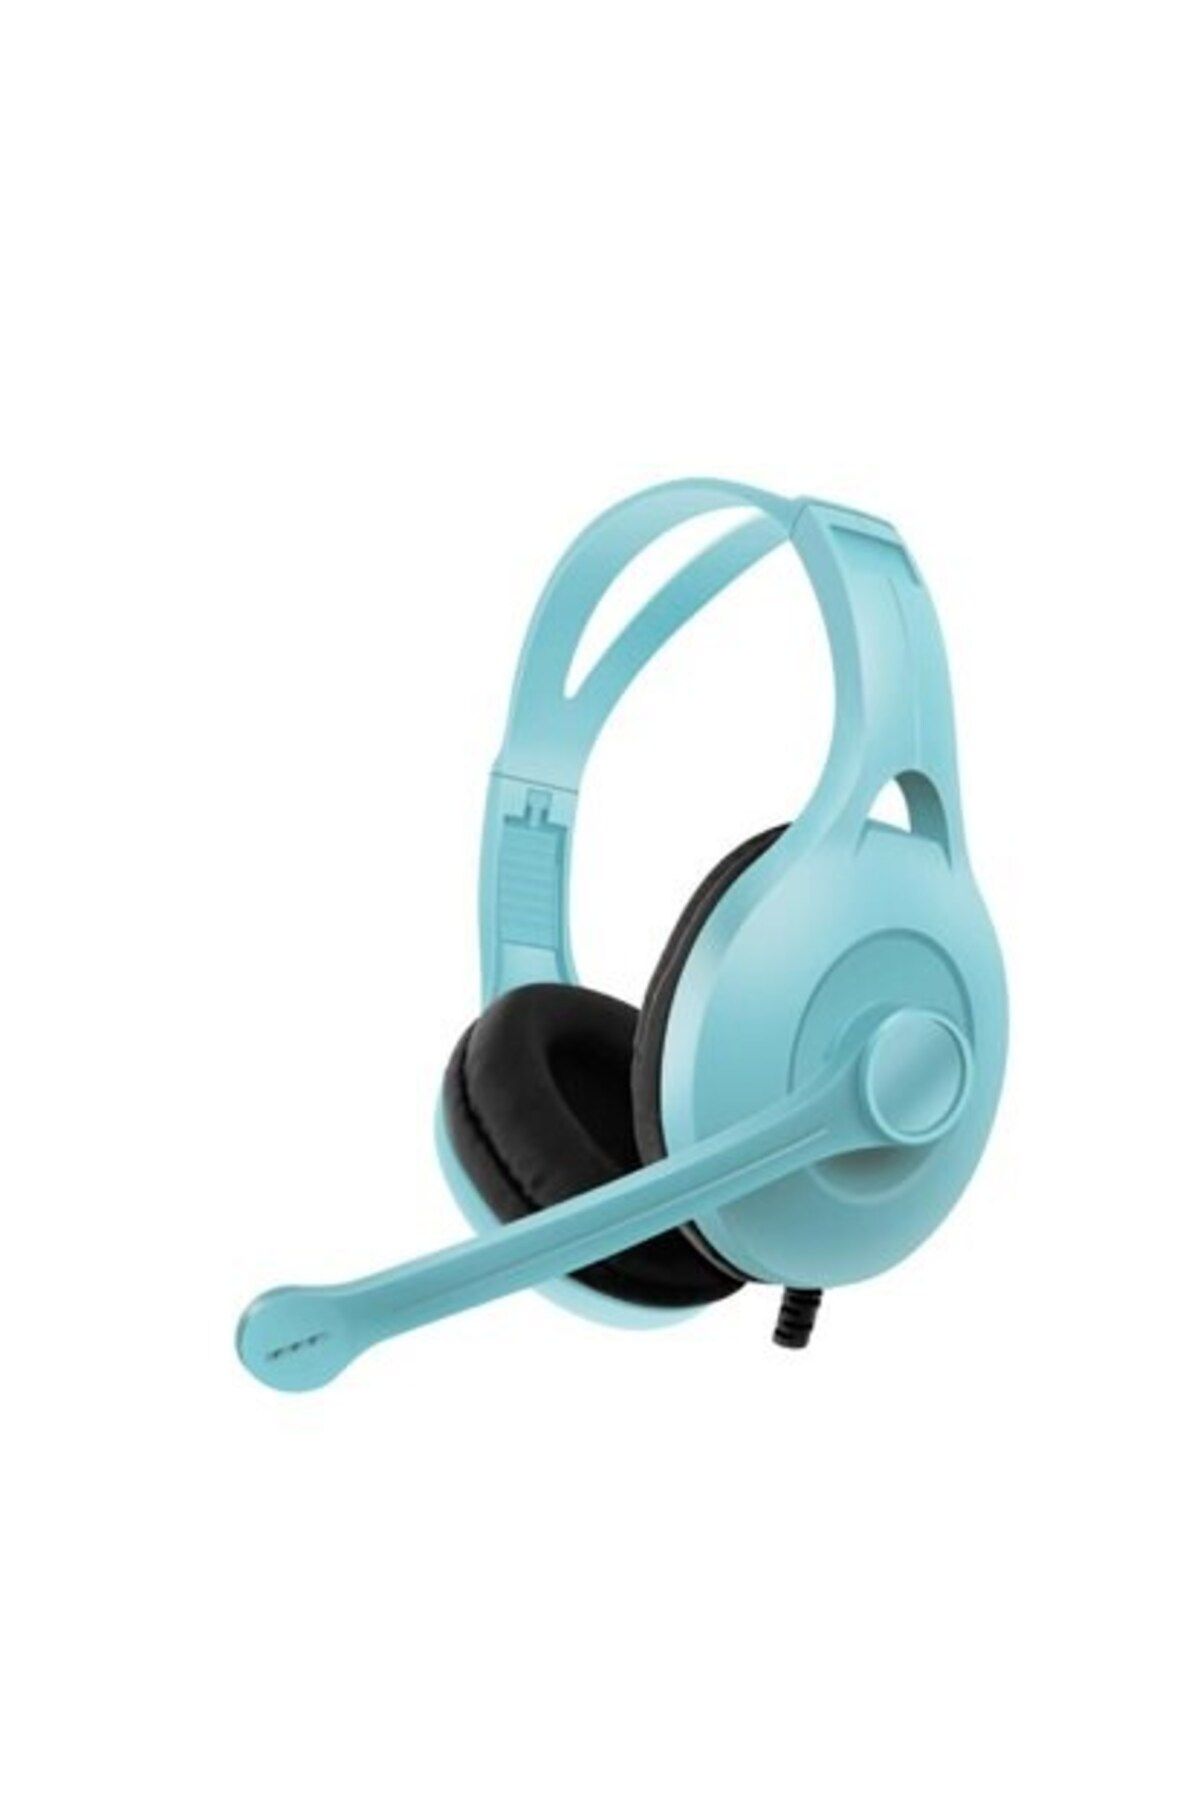 NewFace Kablolu Mikrofonlu Kulak Üstü Oyuncu Kulaklık  Cep Telefonu&Tablet&Pc Uyumlu